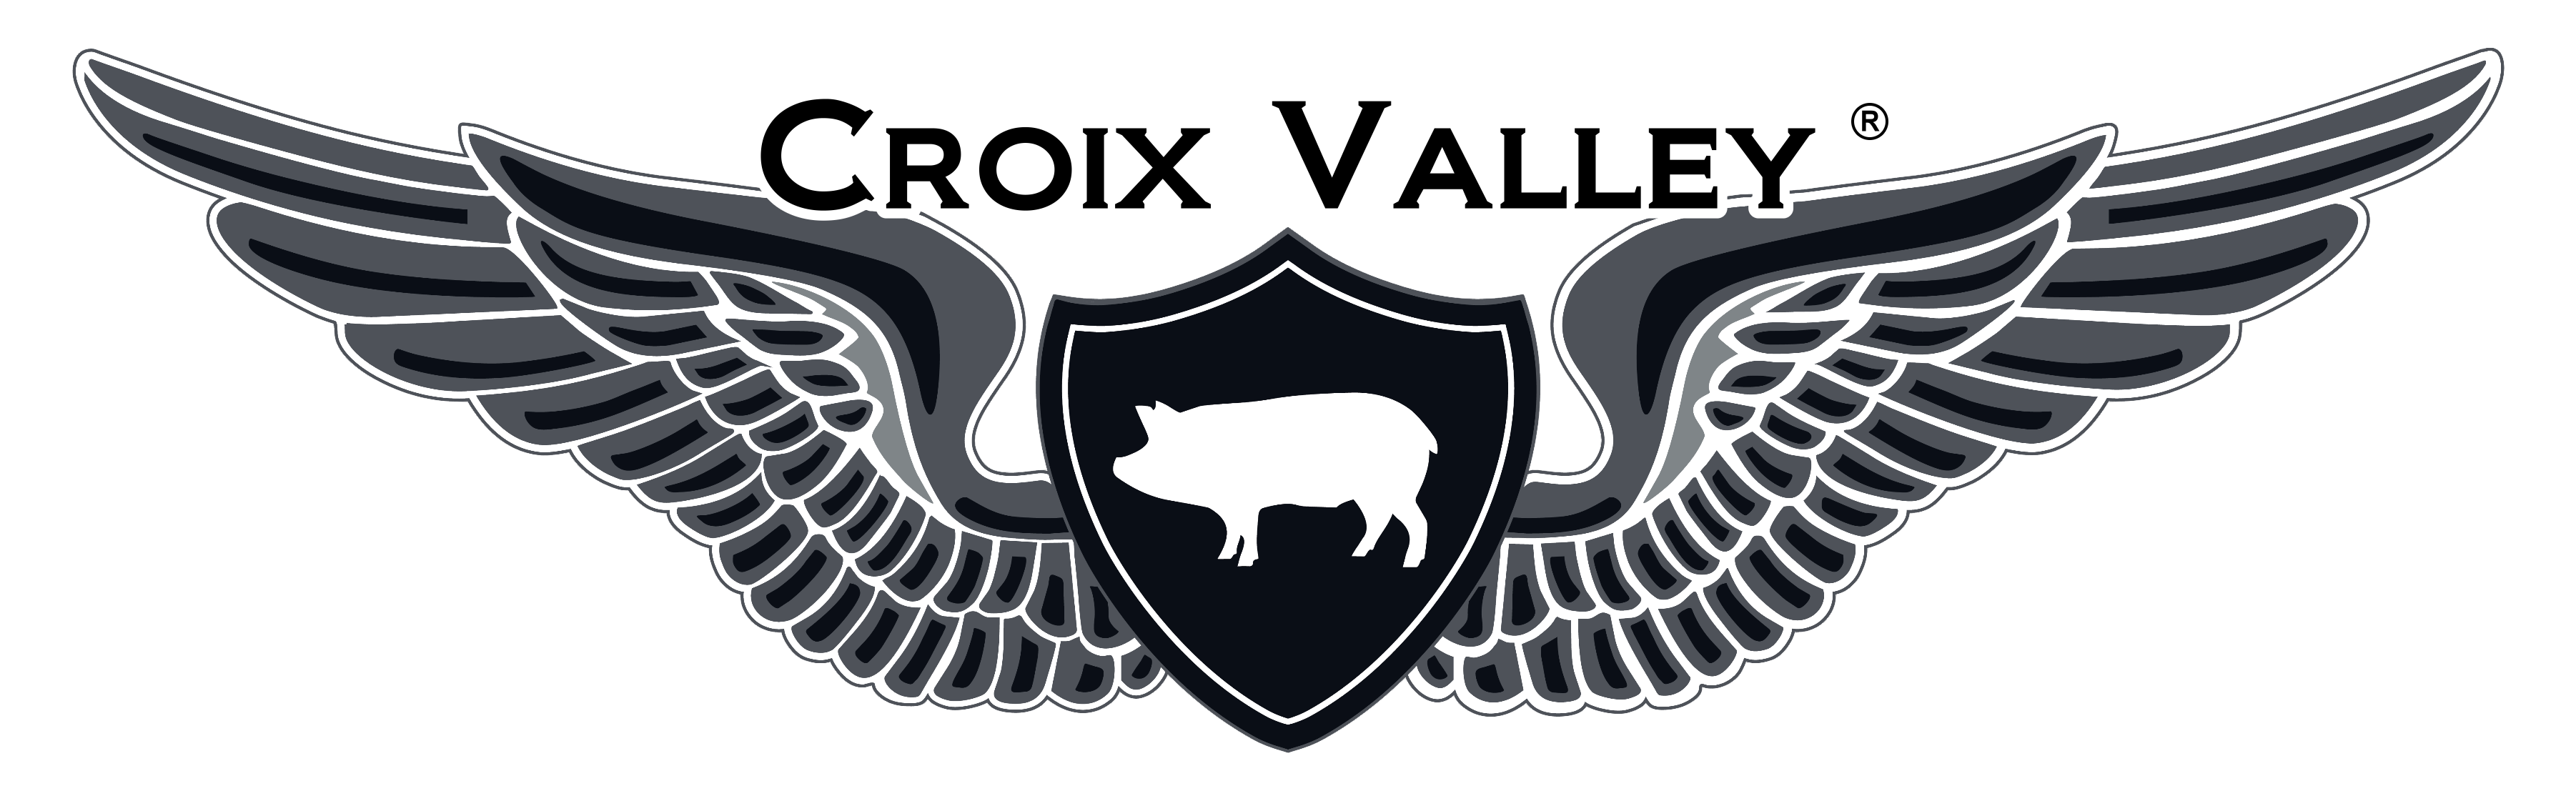 Croix Valley Original Steak Sauce & Marinade - Croix Valley Foods